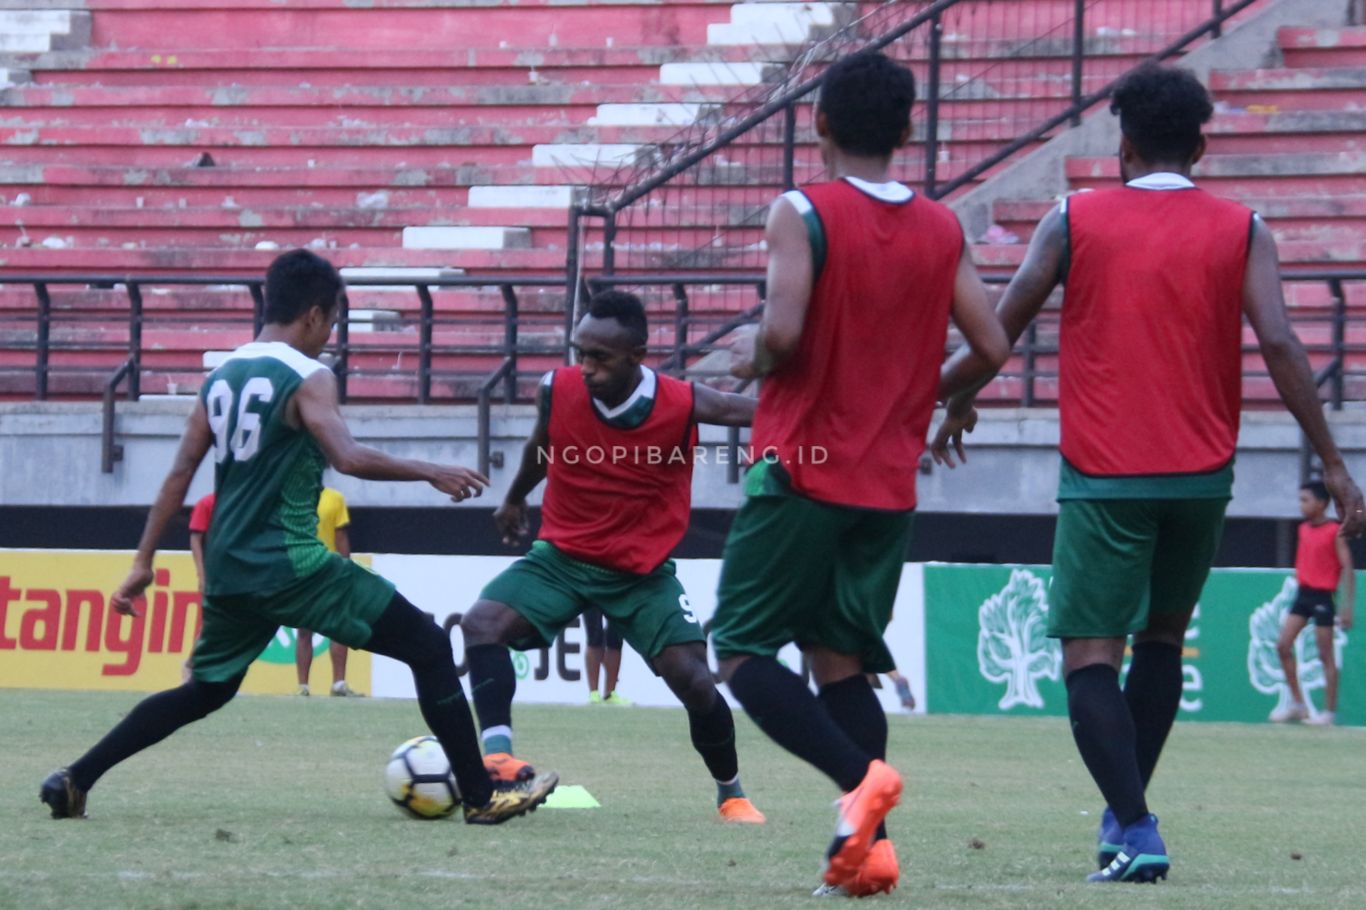 Pemain Persebaya, Ricky Kayame bakal ditunjuk sebagai striker saat menghadapi Persipura. (foto: Haris/ngopibareng)